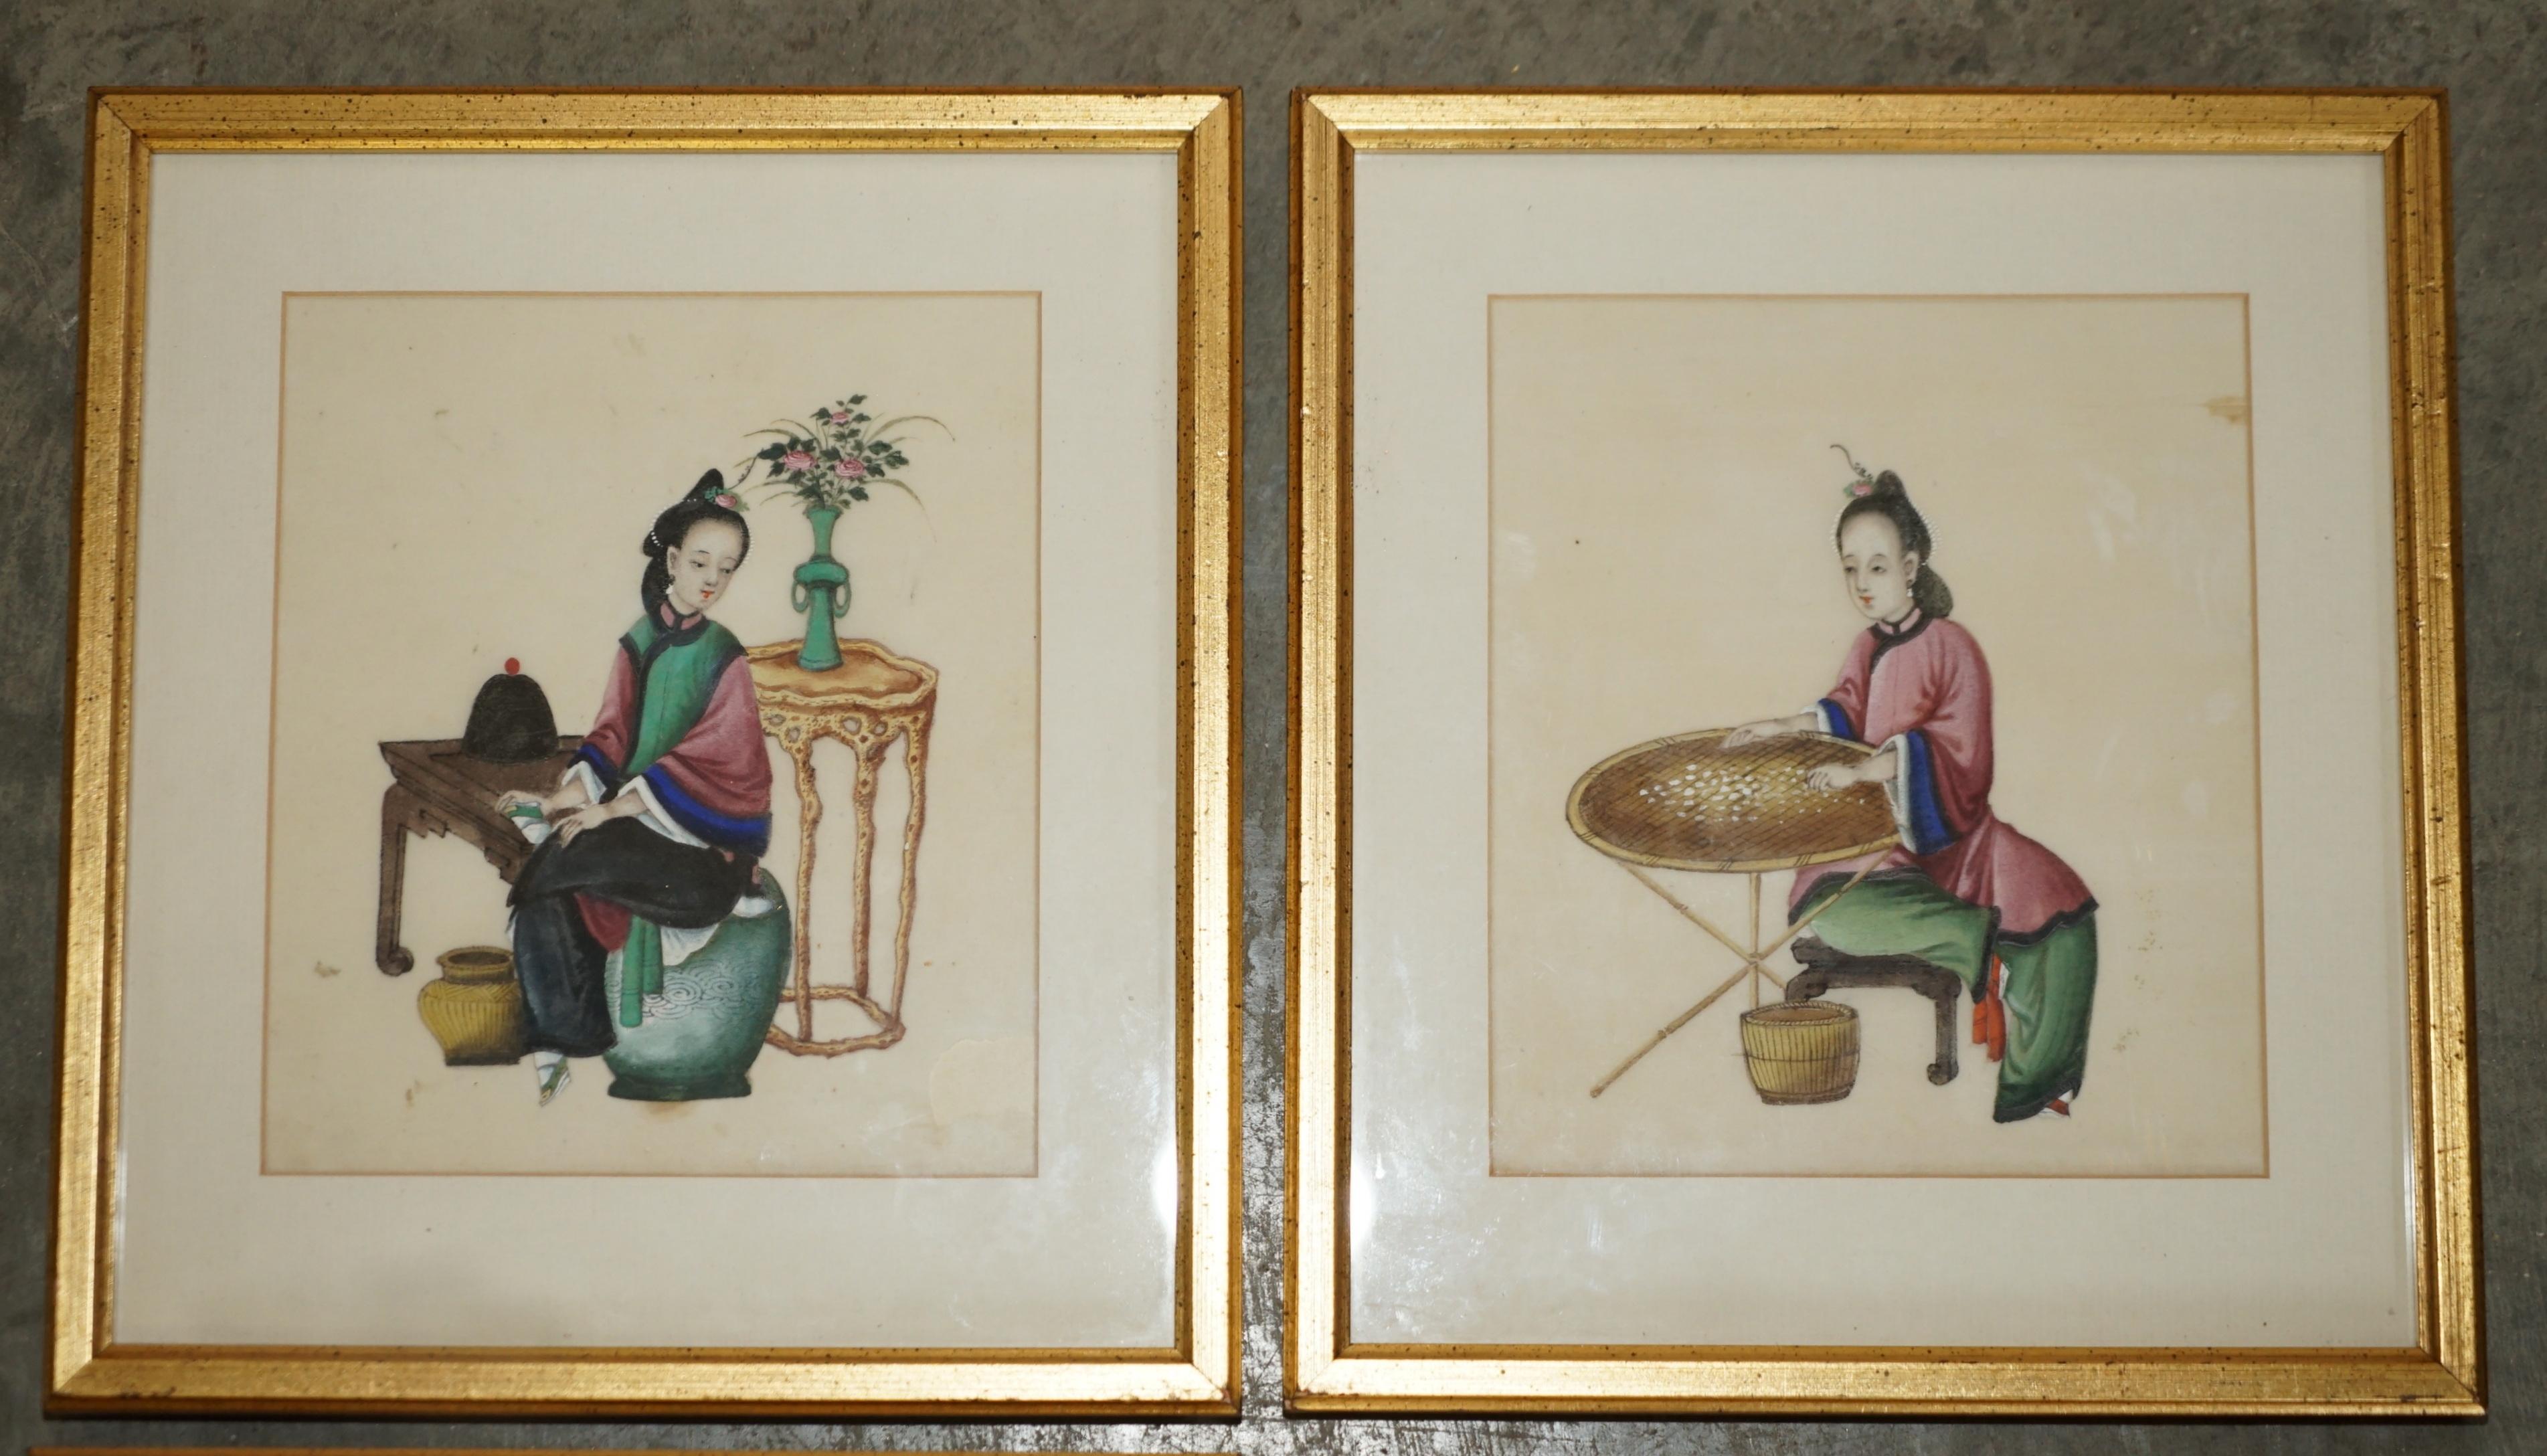 Nous sommes ravis d'offrir à la vente cette charmante suite de quatre peintures à la gouache chinoises anciennes, datant des années 1880, représentant des geishas dans des décors traditionnels.

D'une grande beauté et magnifiquement peinte, cette